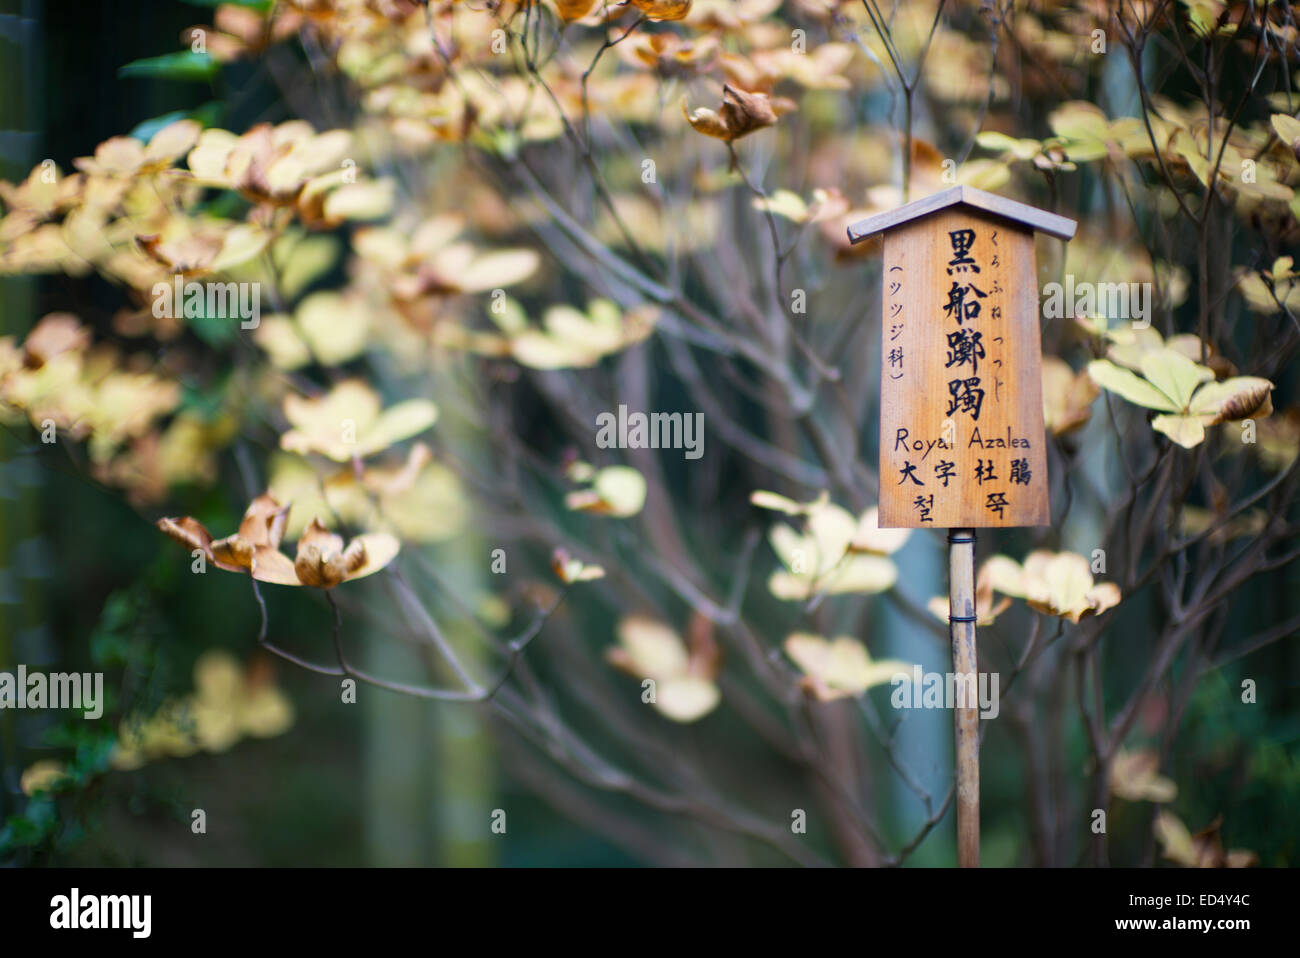 Royal Azalea sign in Japanese garden, Arashiyama, Kyoto, Japan. Stock Photo